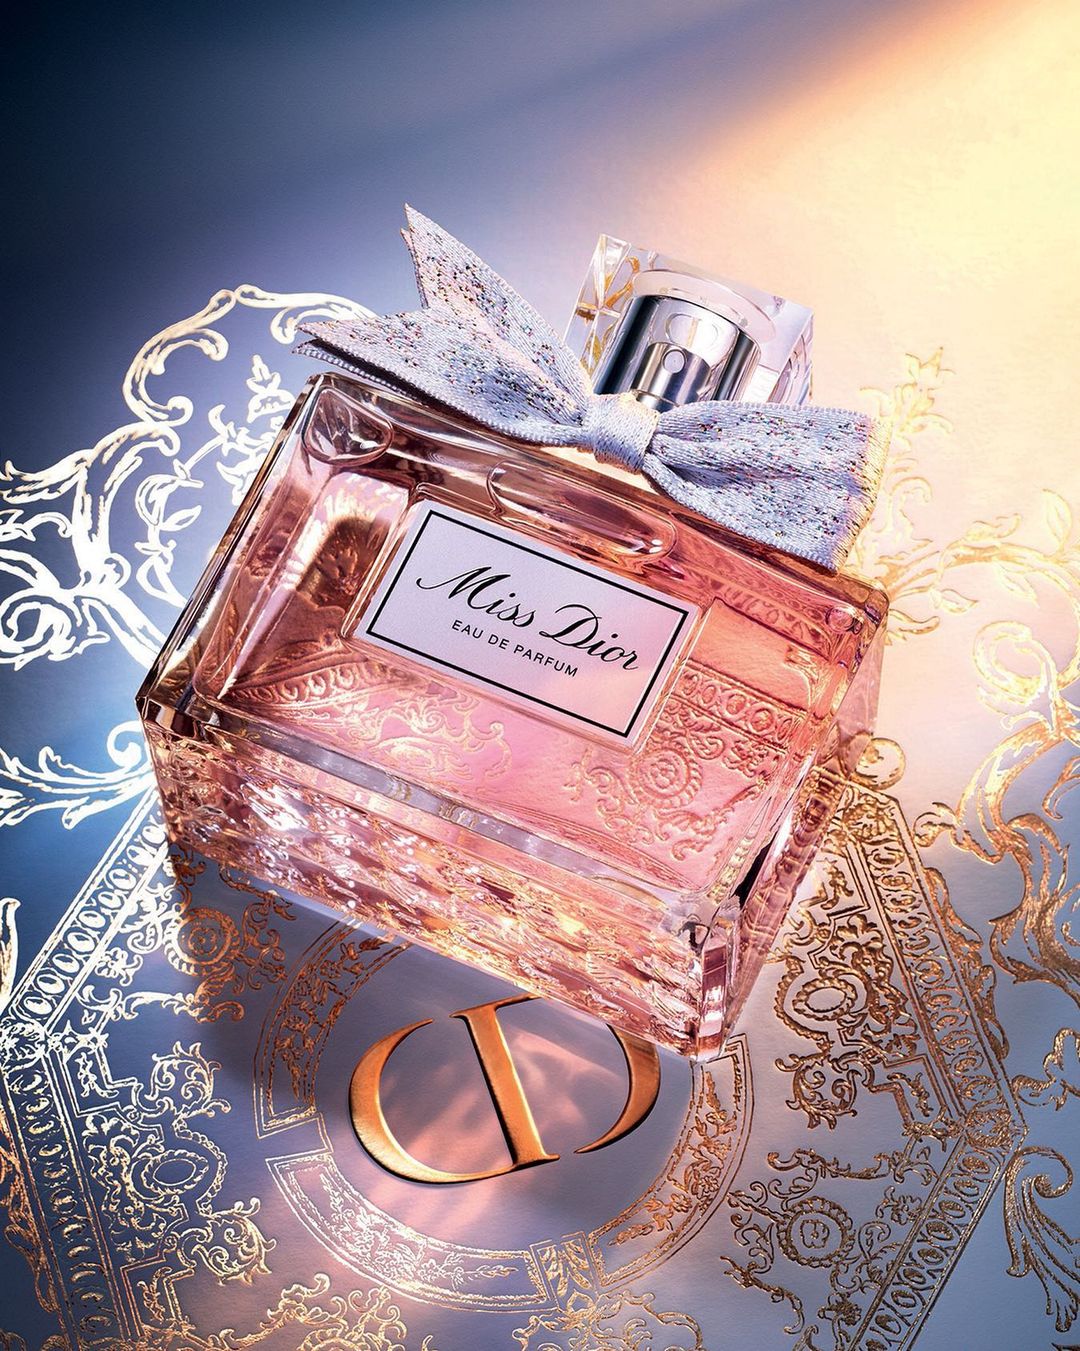 One of the dreamiest luxury fragrances, Miss Dior Eau de Parfum